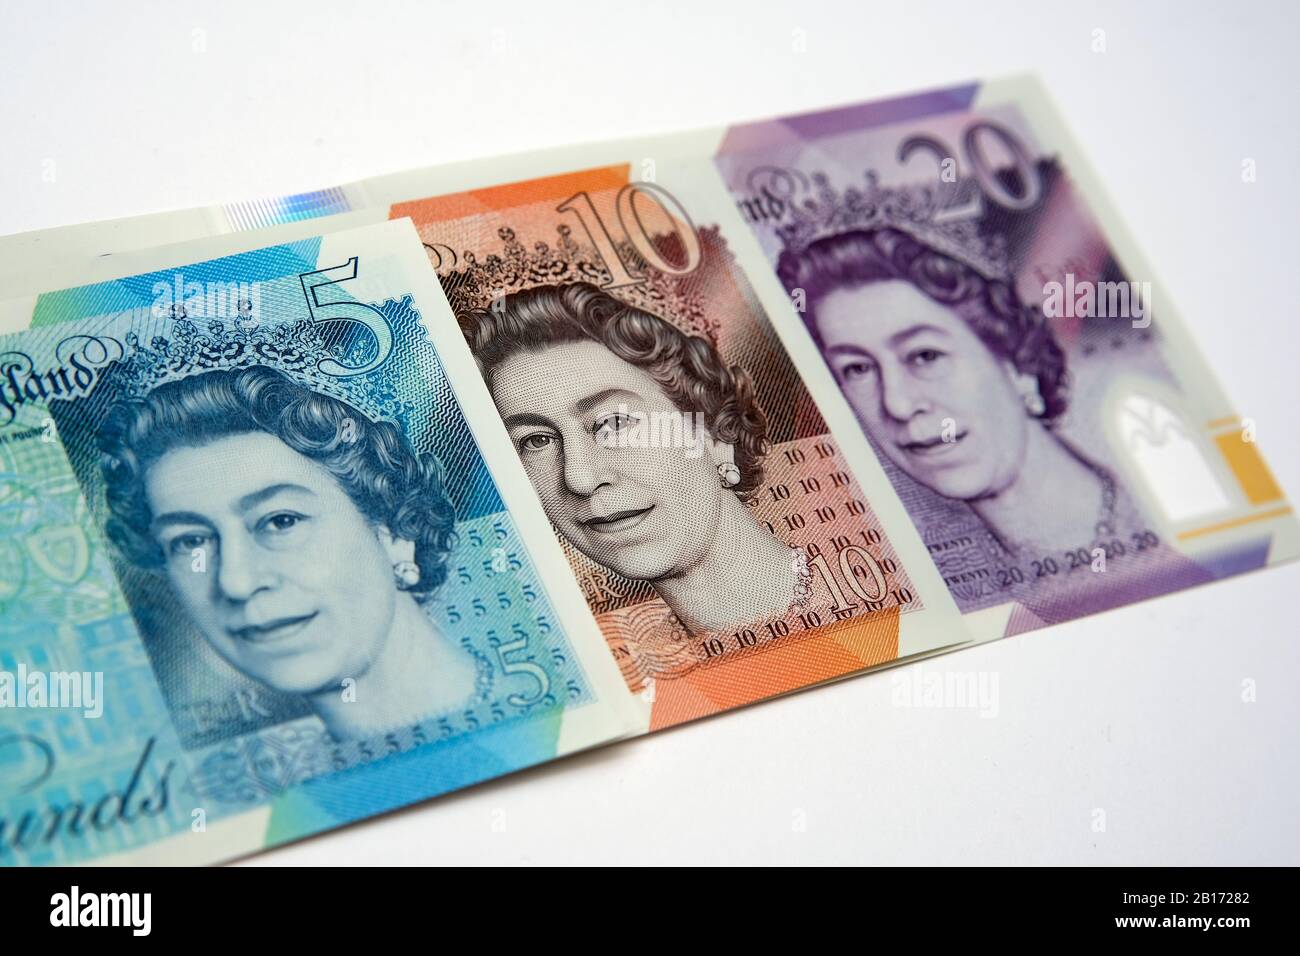 Nuovo denaro polimerico britannico. La banconota rilasciata nel Regno Unito entro il febbraio 2020. Foto Stock